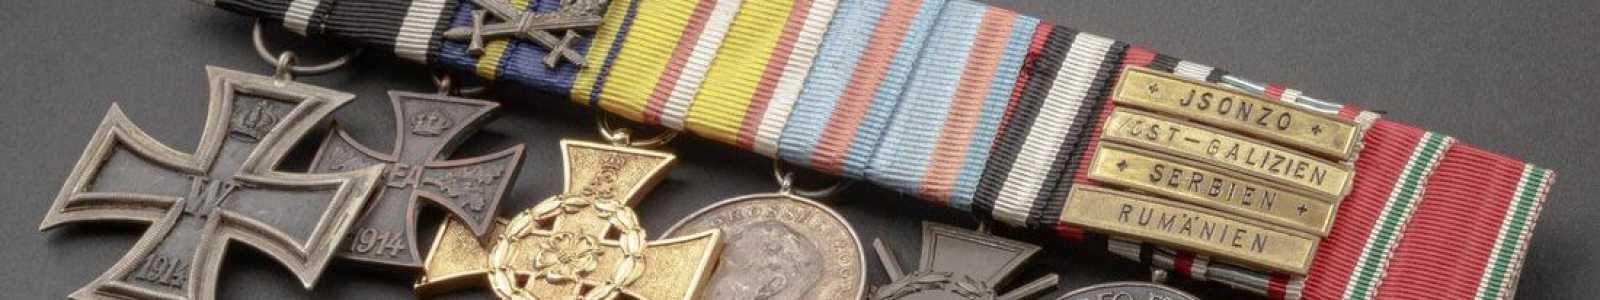 O82m - Internationale Orden & militärhistorische Sammlungsstücke